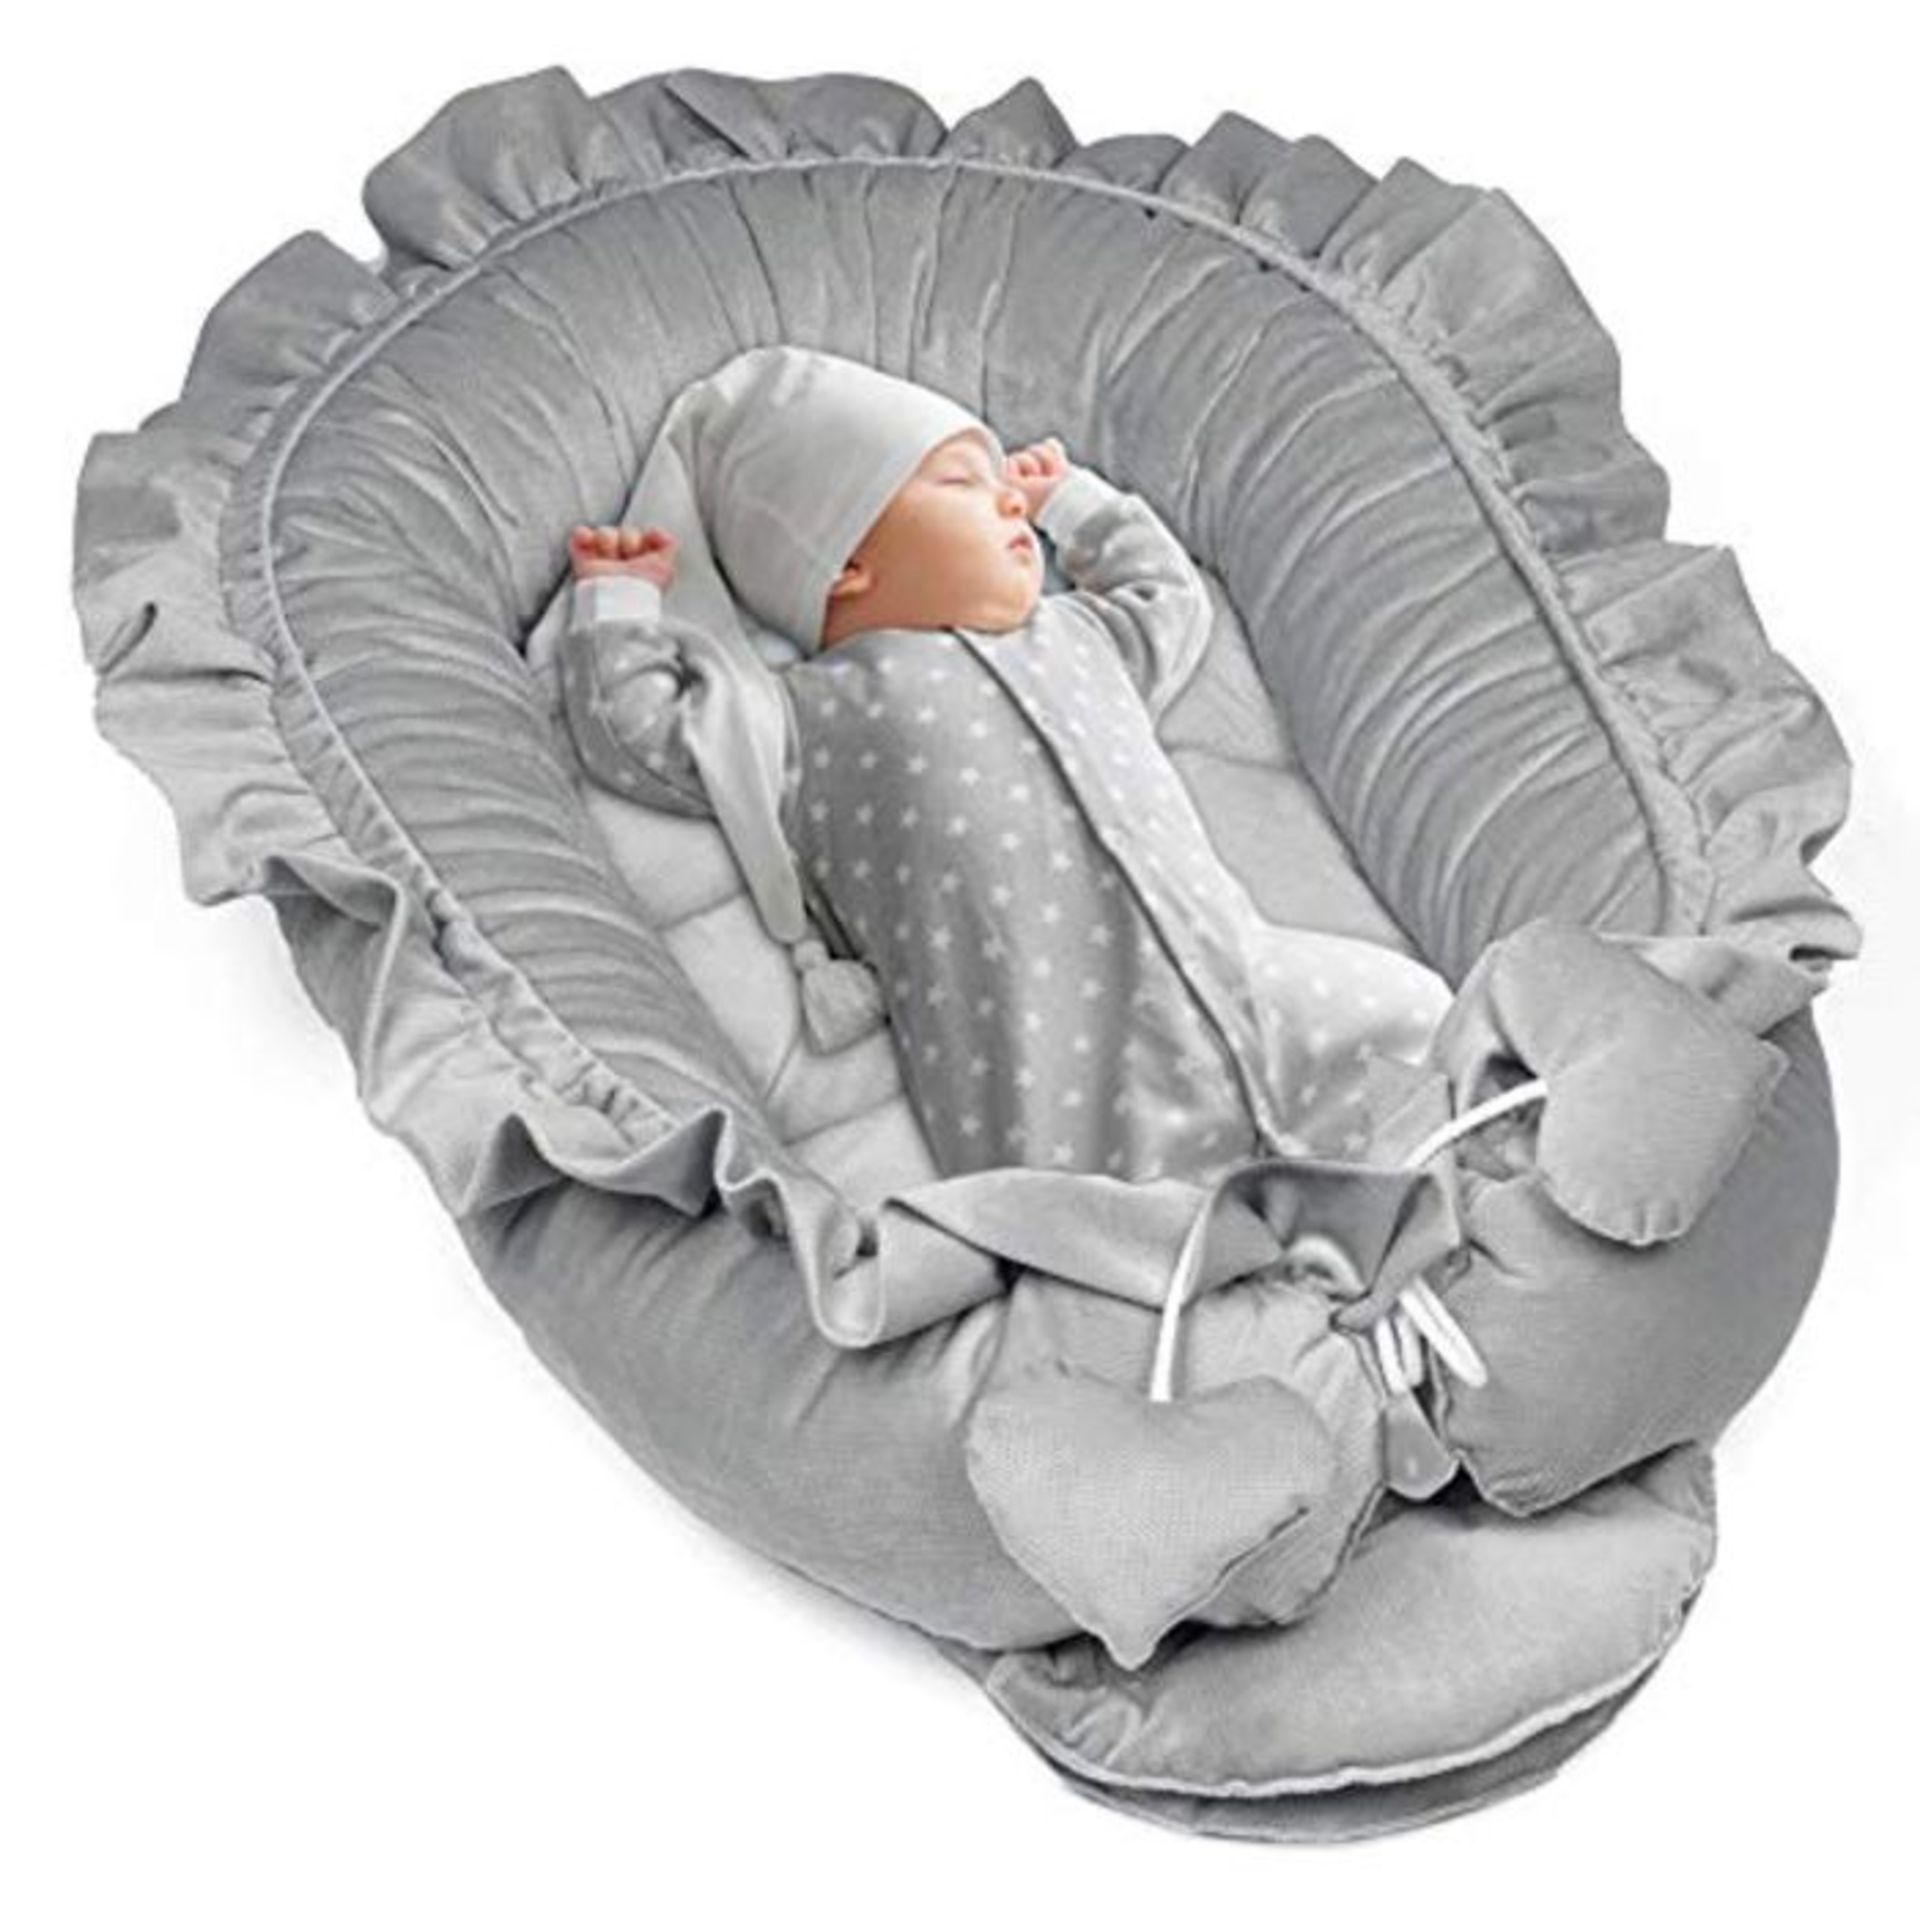 Baby Nest Set Newborn 90 x 50 cm - Cuddly Nest Baby Cot Bumper Bed Cocoon Grey